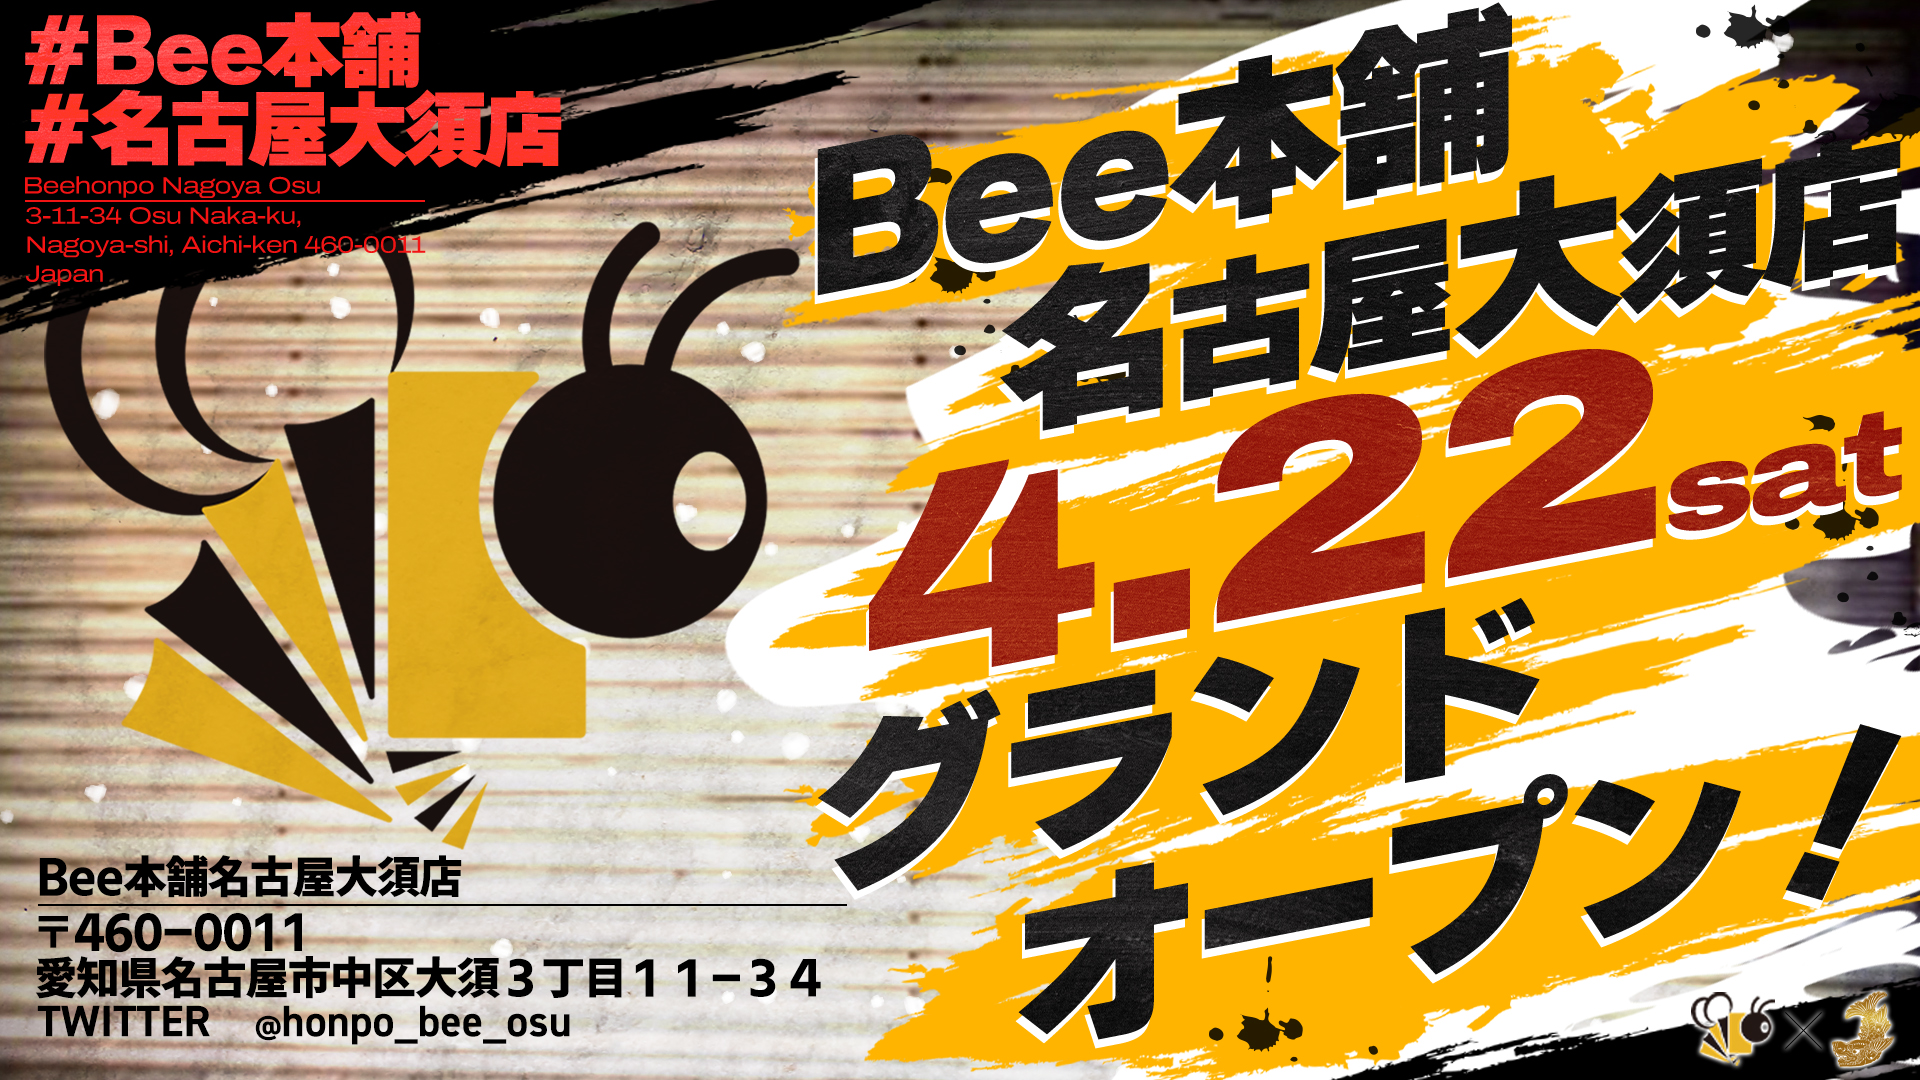 トレーディングカードショップBee本舗 「名古屋大須店」 が4月22日にグランドオープン!!